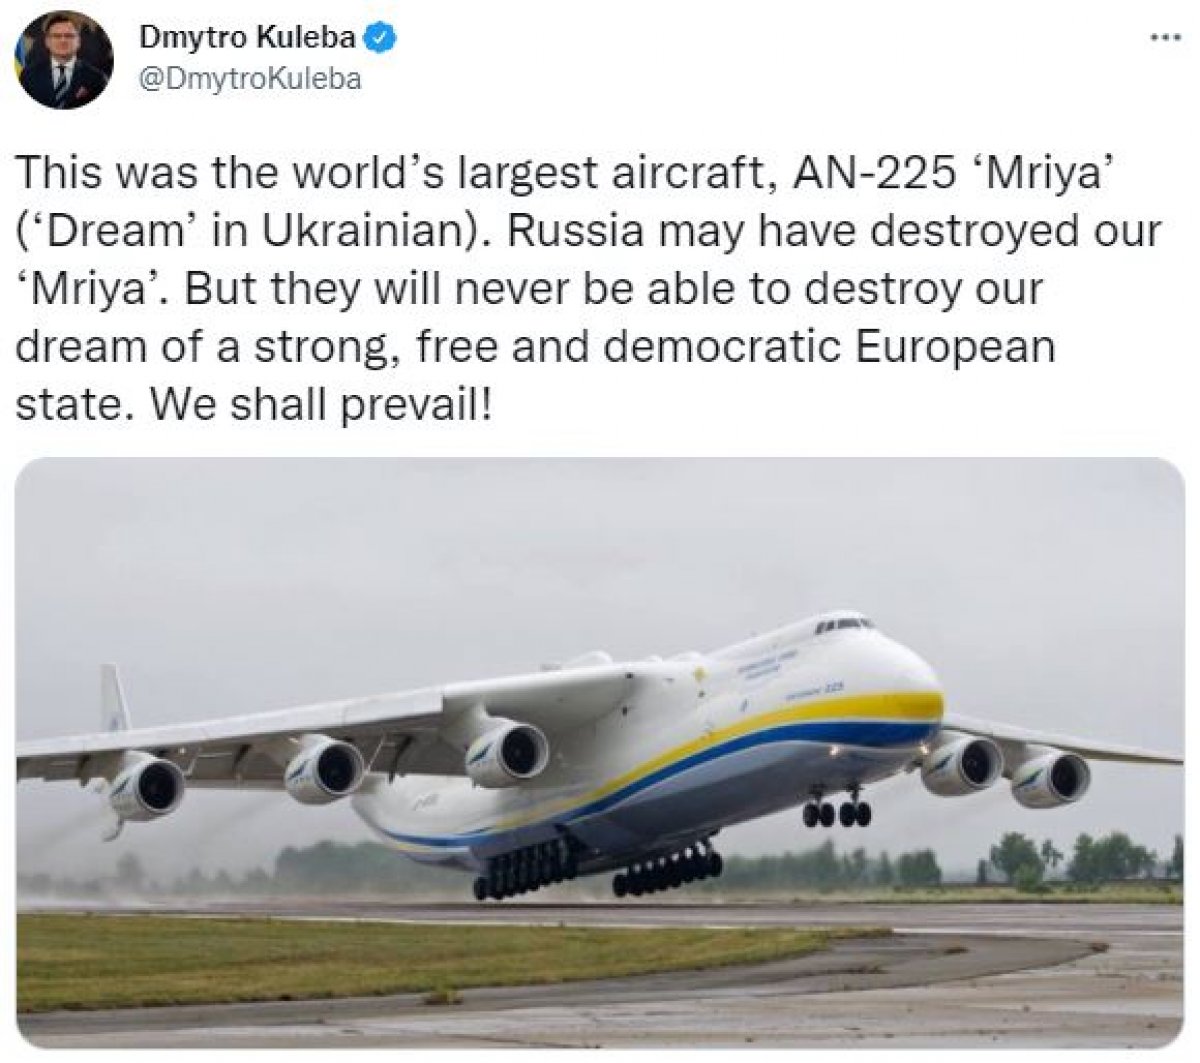 Dünyanın en büyük uçağı Antonov AN-225, Rus saldırısında vuruldu #1